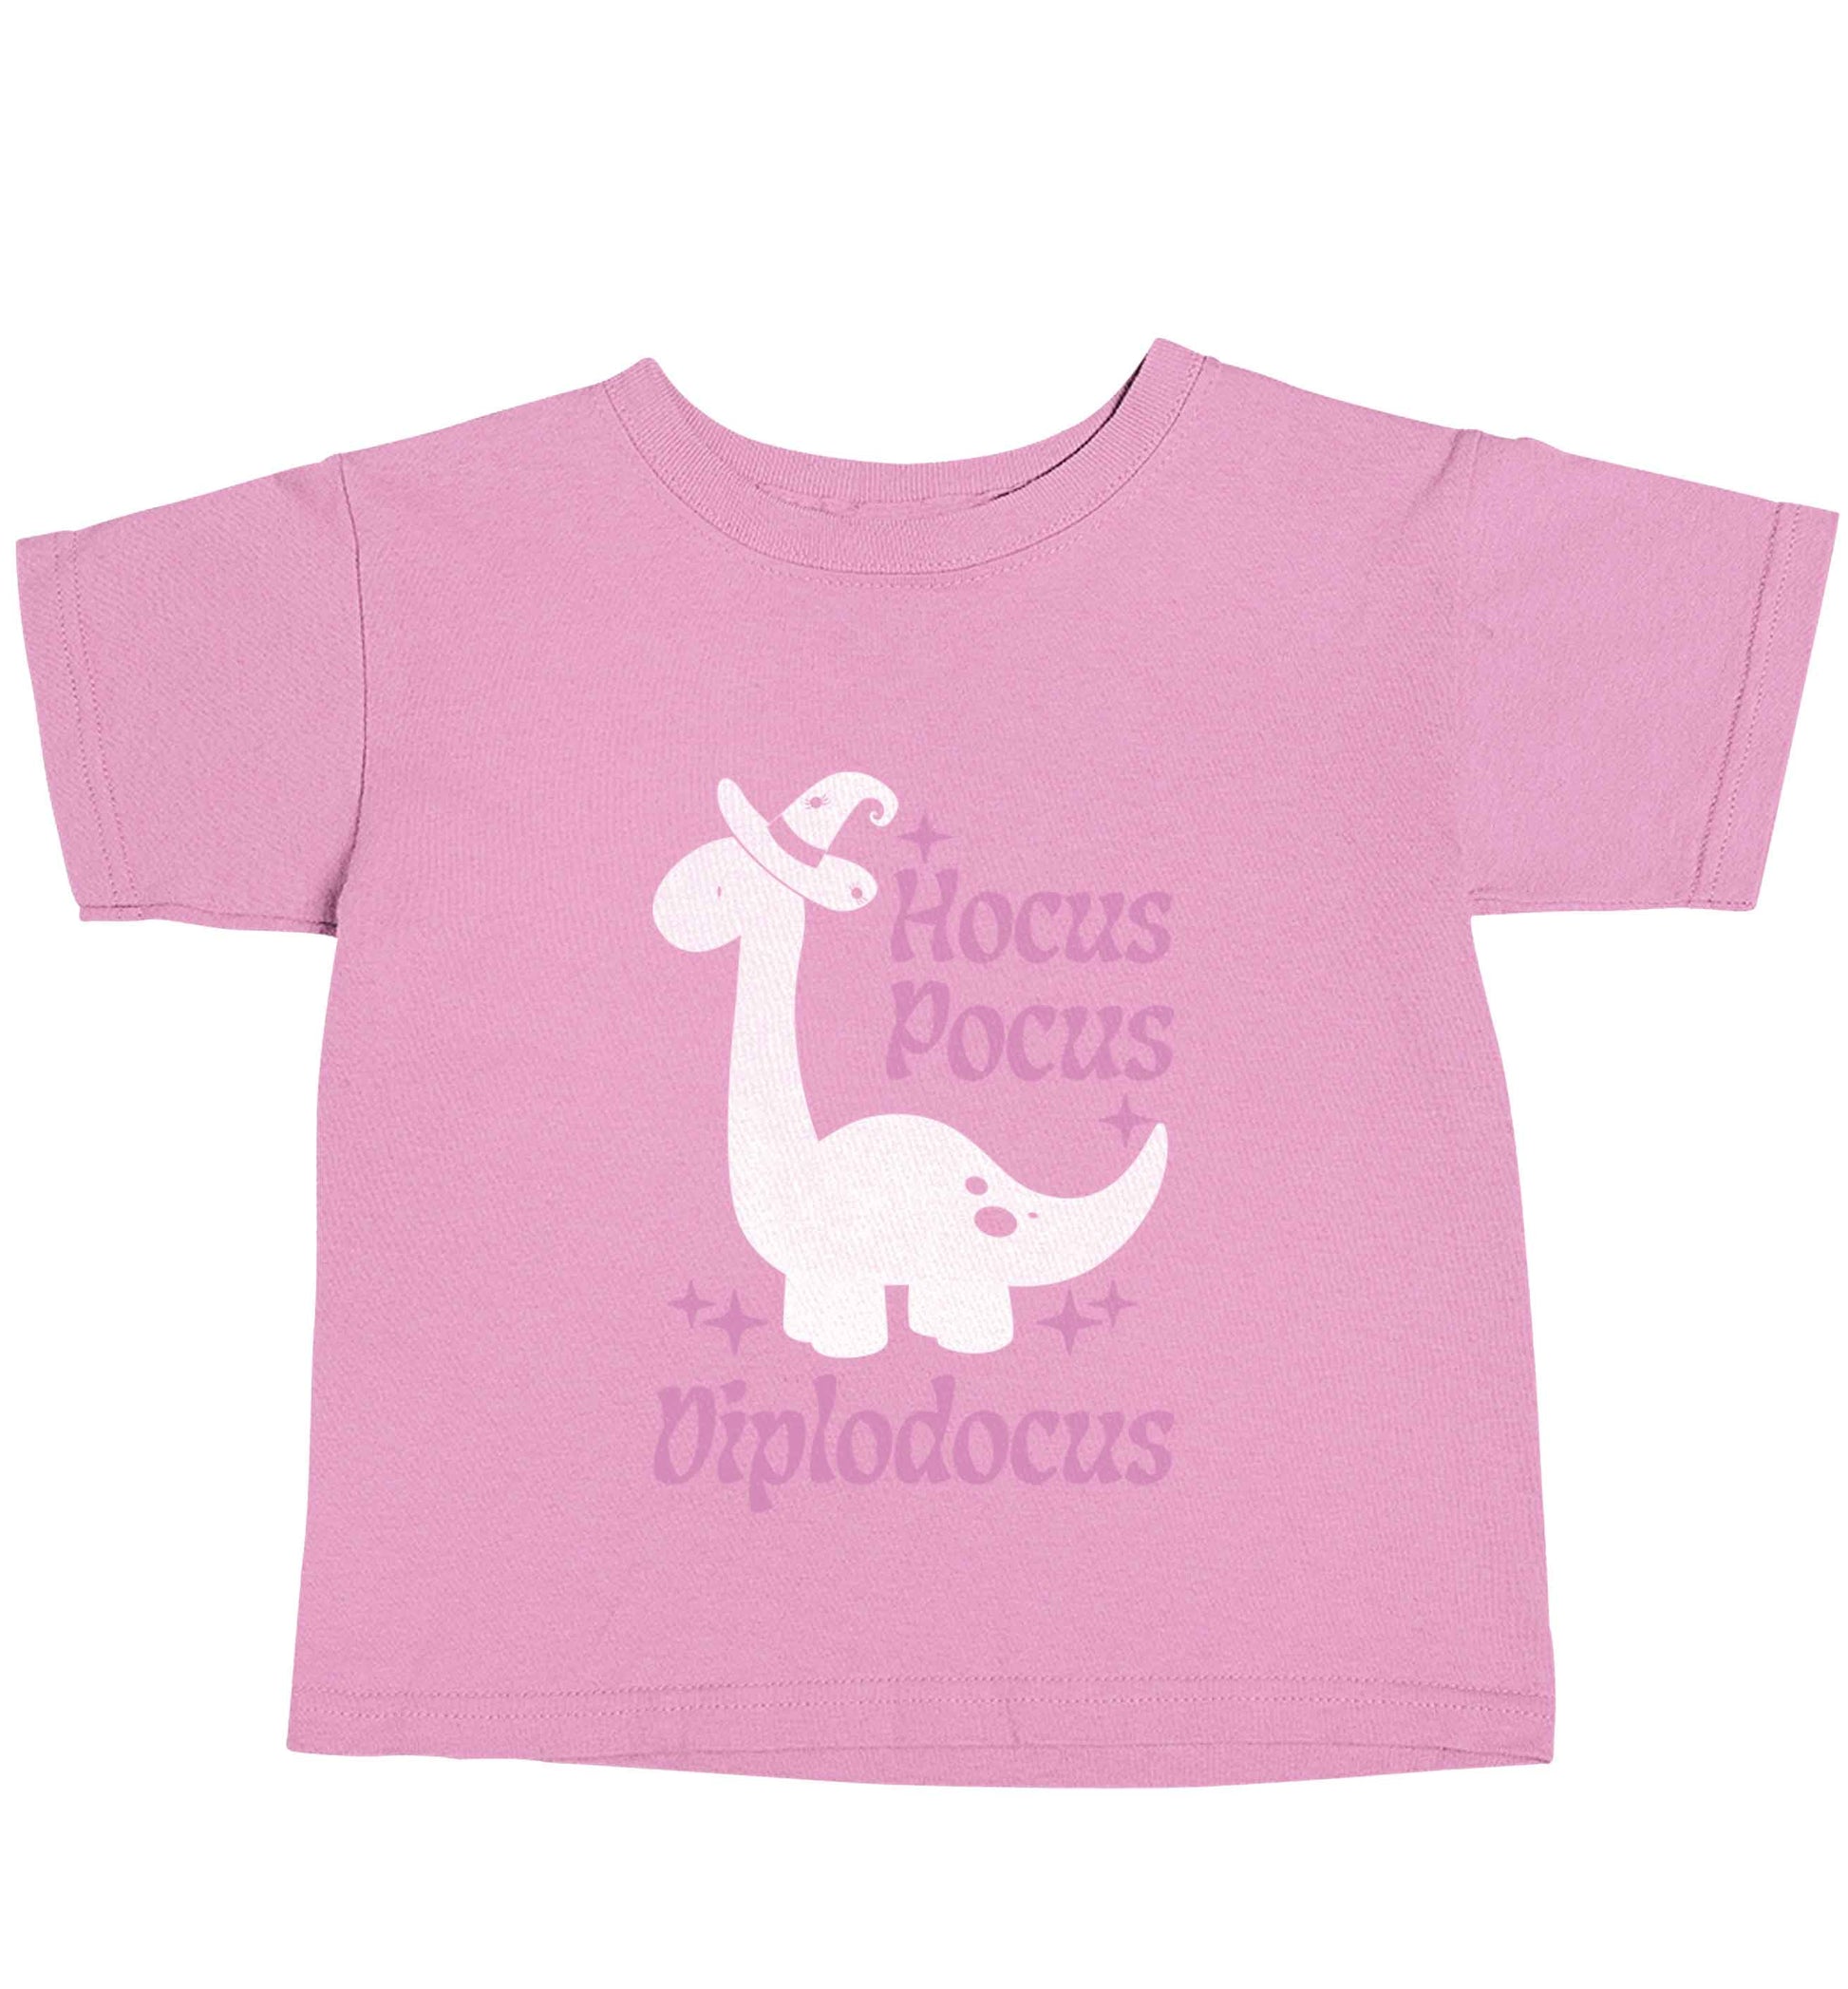 Hocus pocus diplodocus Kit light pink baby toddler Tshirt 2 Years